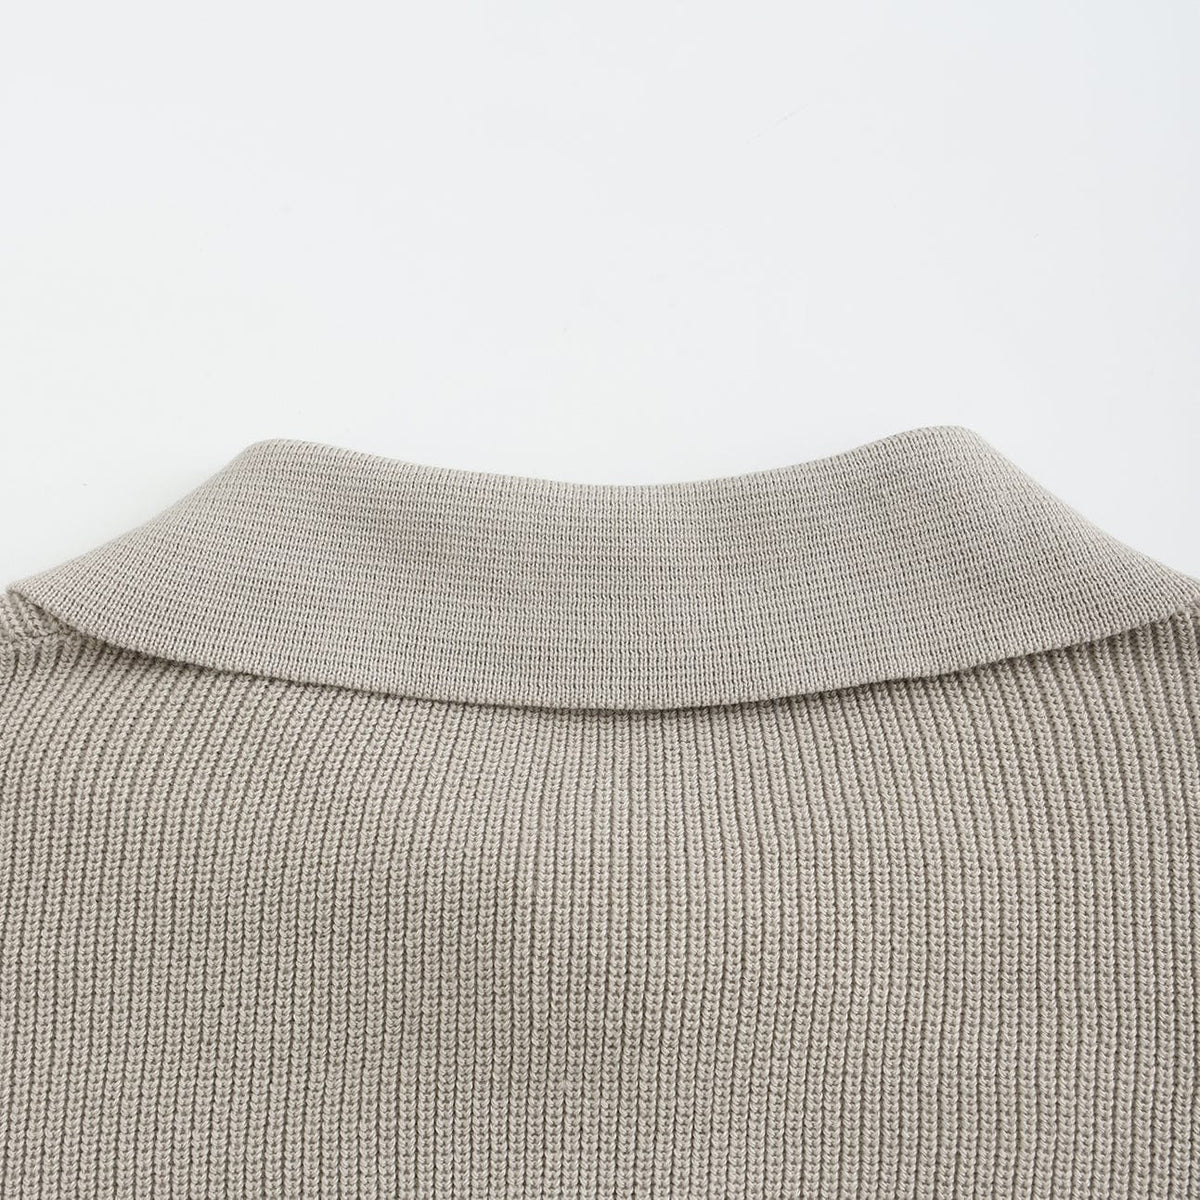 CESARE | Half-Collar Sweater with Zipper